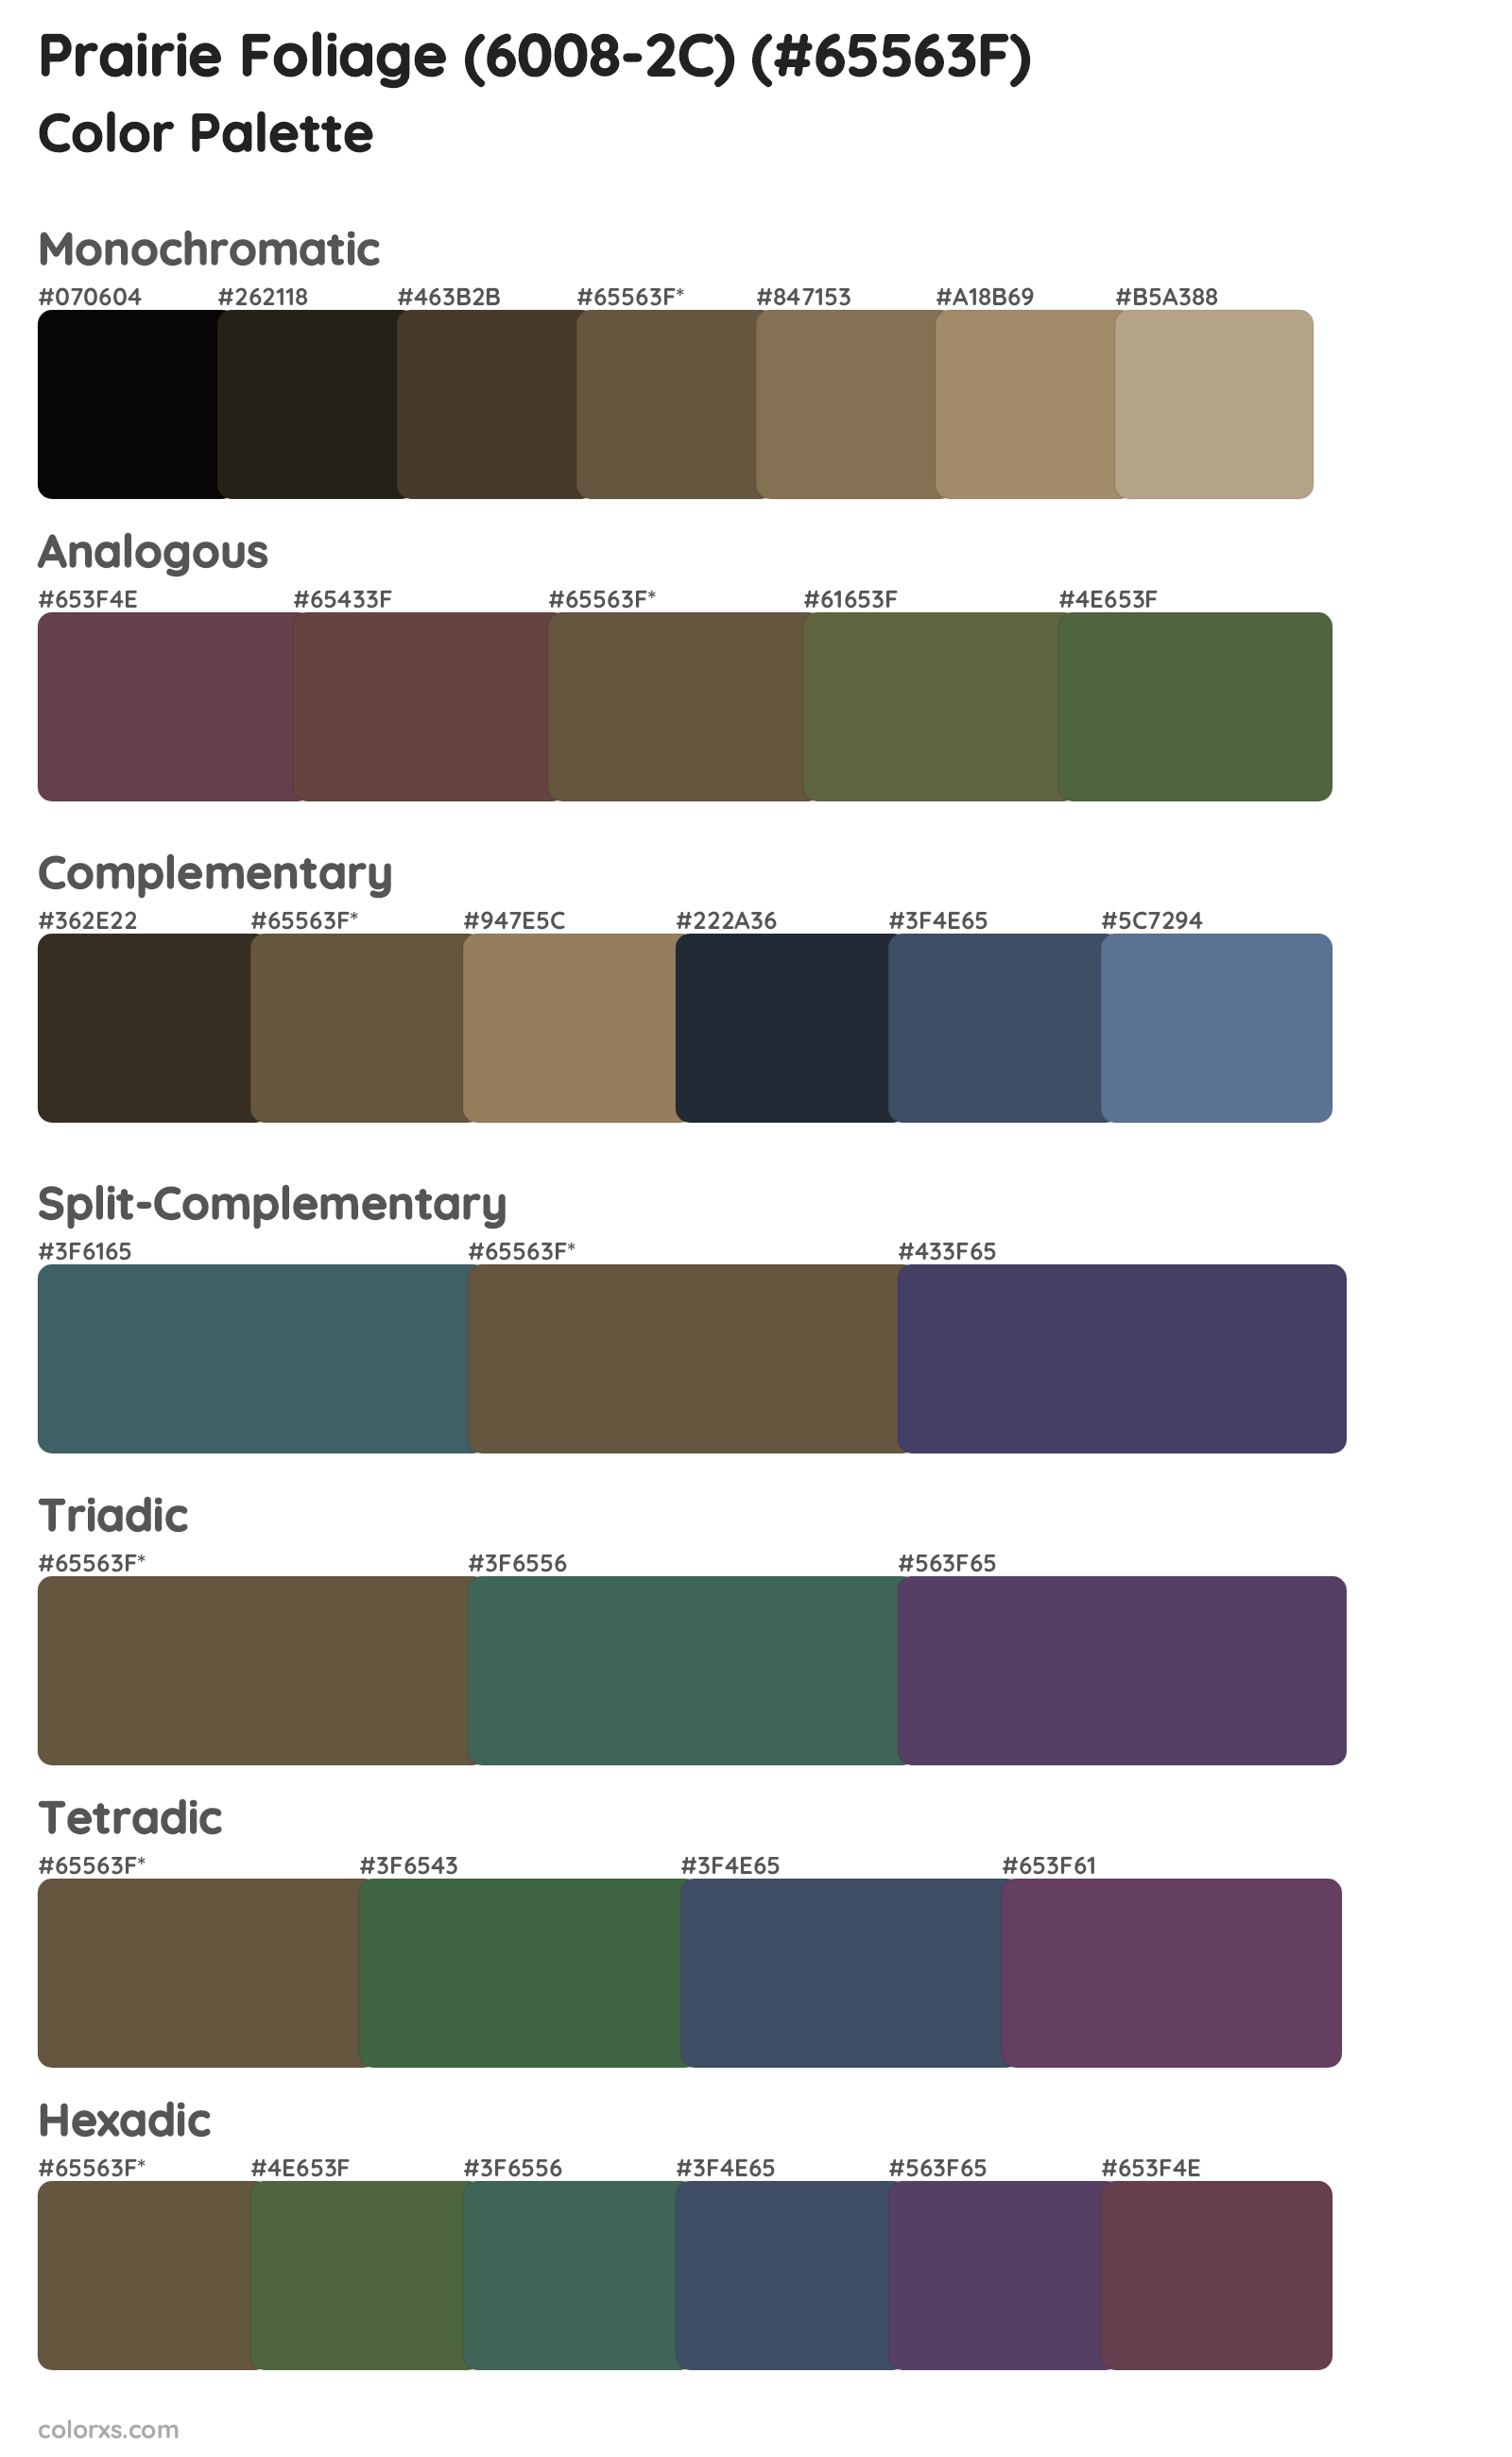 Prairie Foliage (6008-2C) Color Scheme Palettes